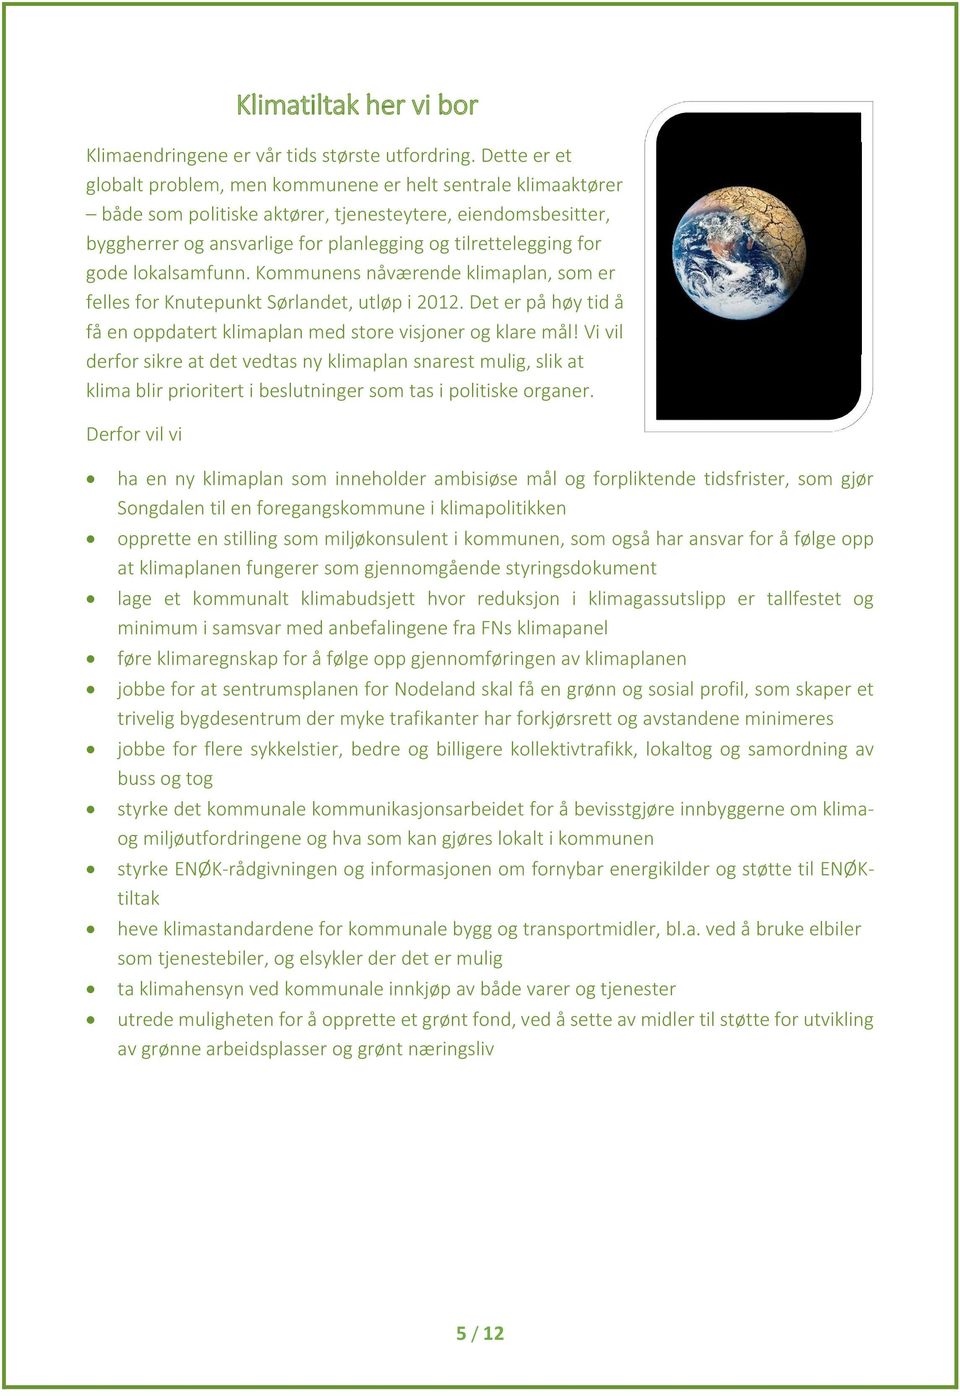 gode lokalsamfunn. Kommunens nåværende klimaplan, som er felles for Knutepunkt Sørlandet, utløp i 2012. Det er på høy tid å få en oppdatert klimaplan med store visjoner og klare mål!